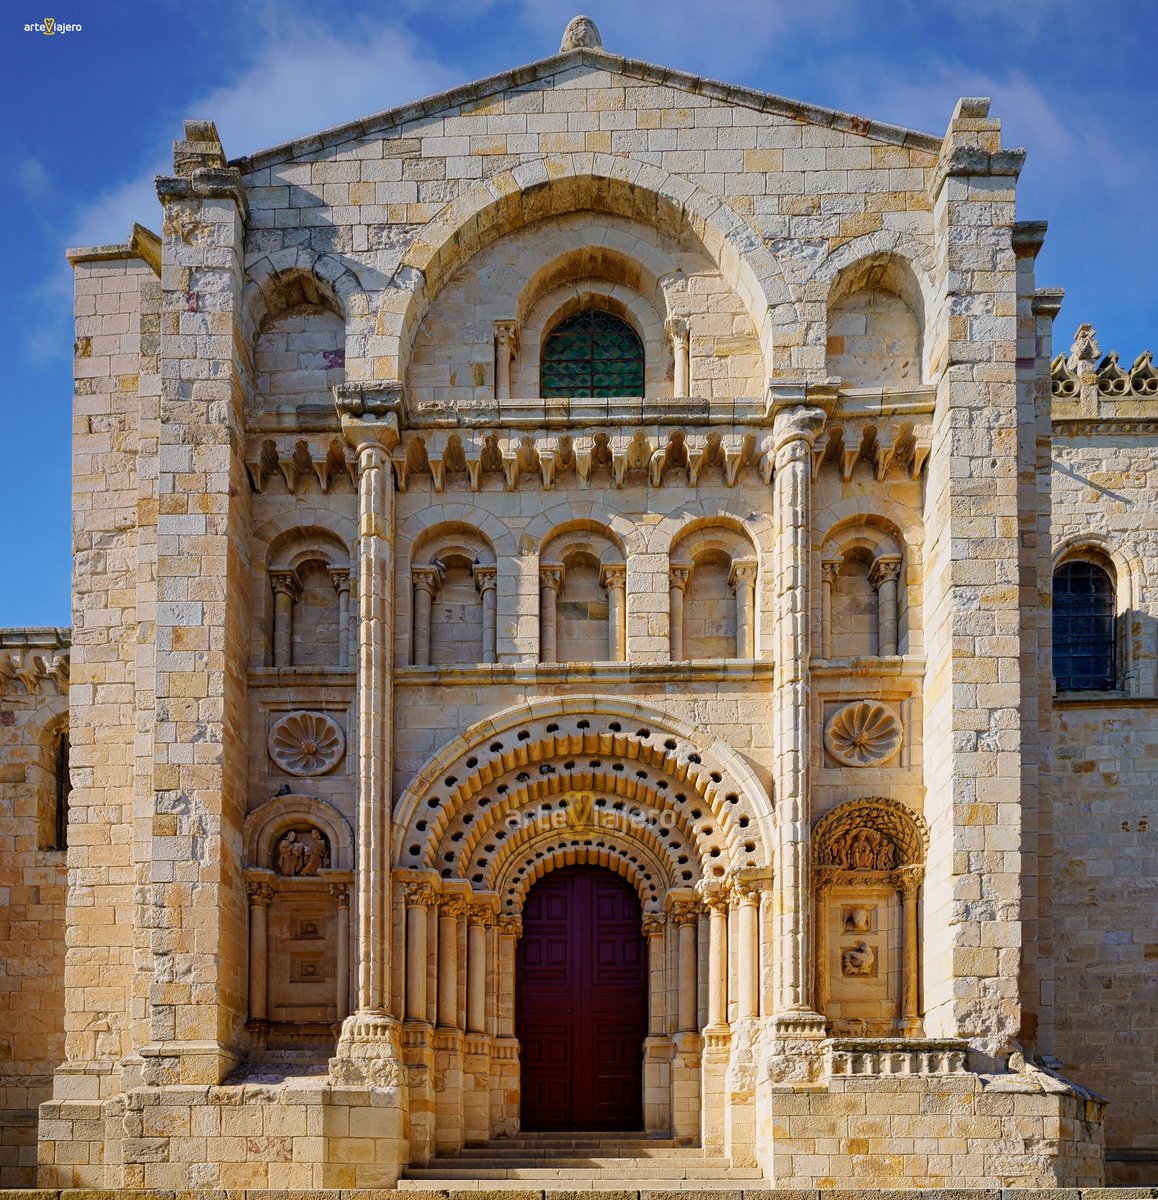 Hoy os presento la magnífica Puerta del Obispo de la Catedral de #Zamora, una de las portadas más interesantes y bellas del arte románico debido a su gran riqueza decorativa 
#FelizJueves #BuenosDias